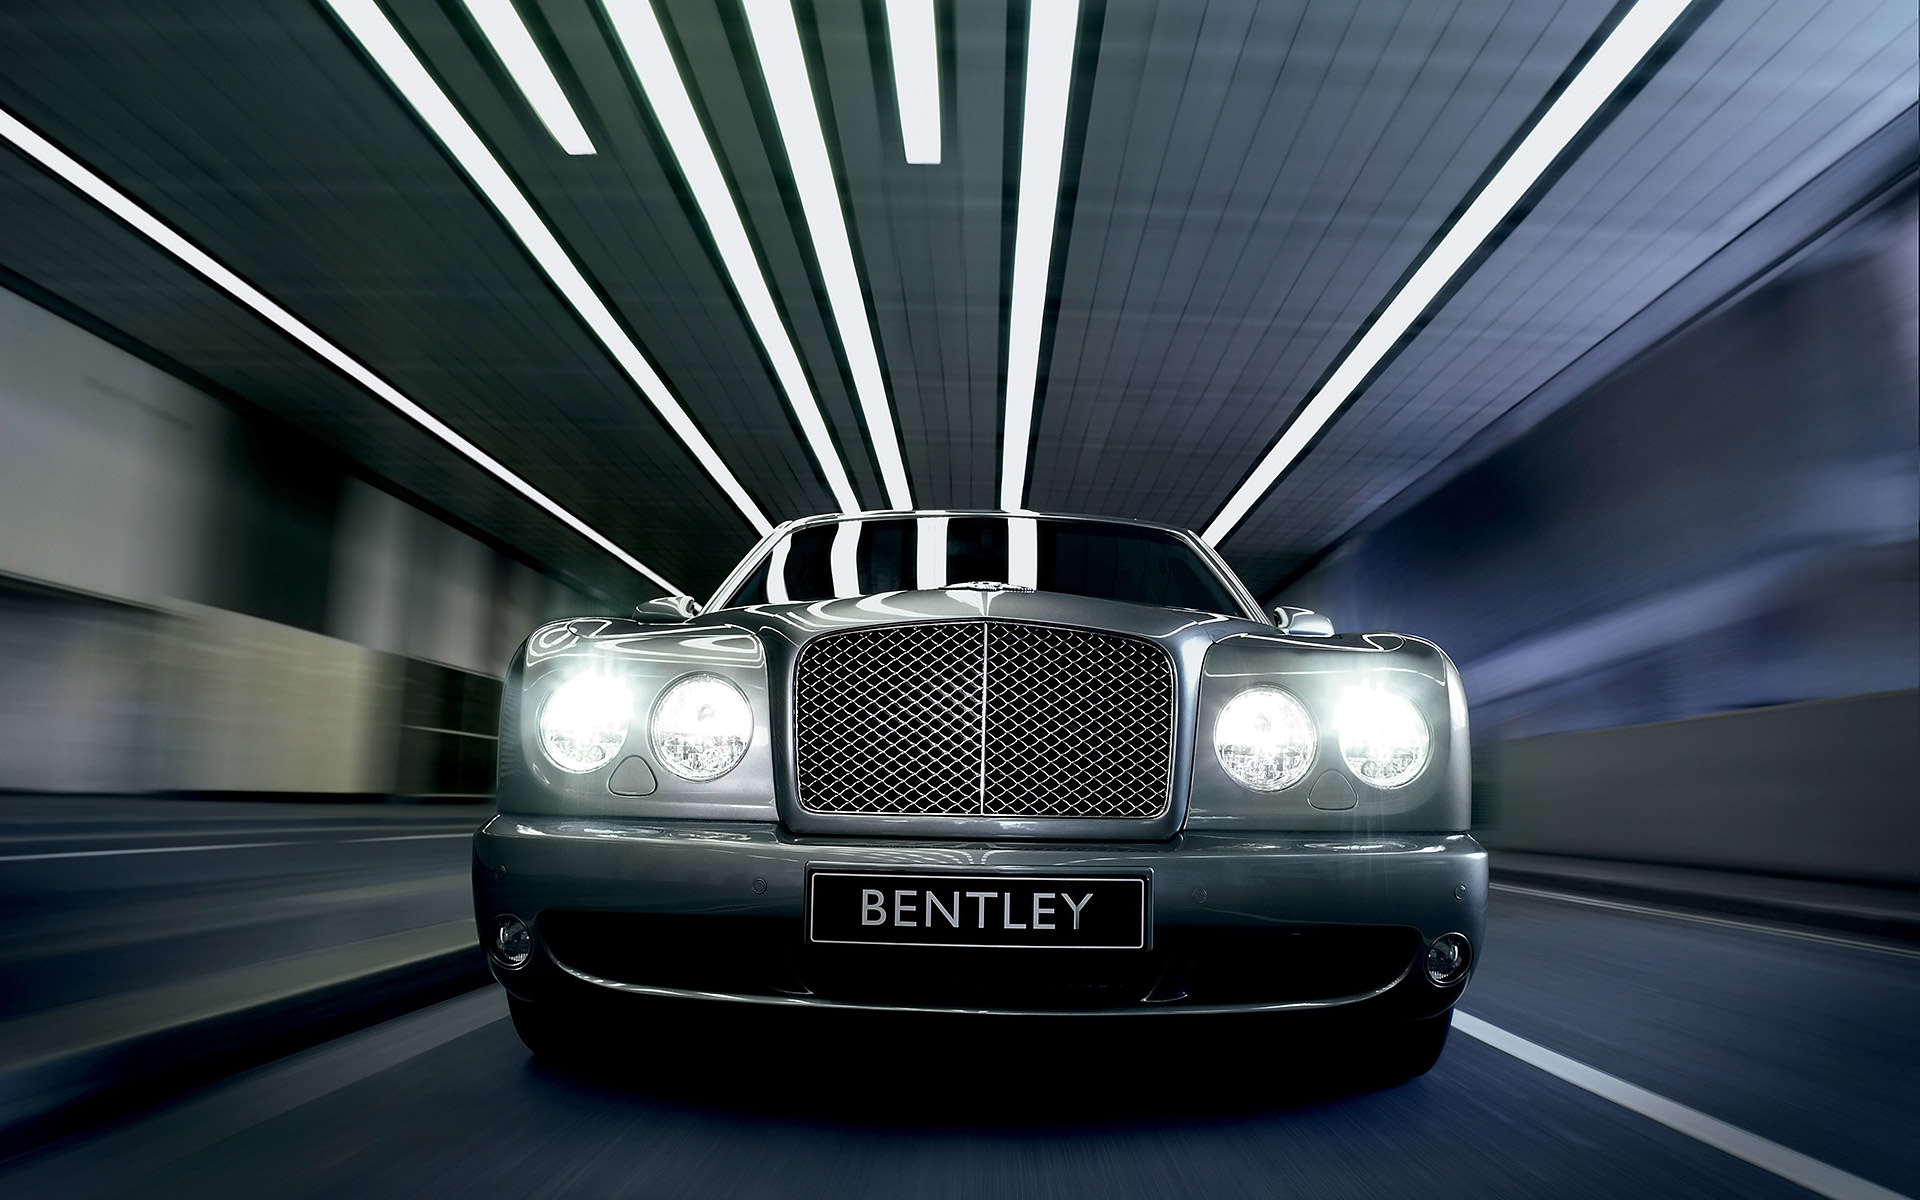  2007 Bentley Arnage Wallpaper.